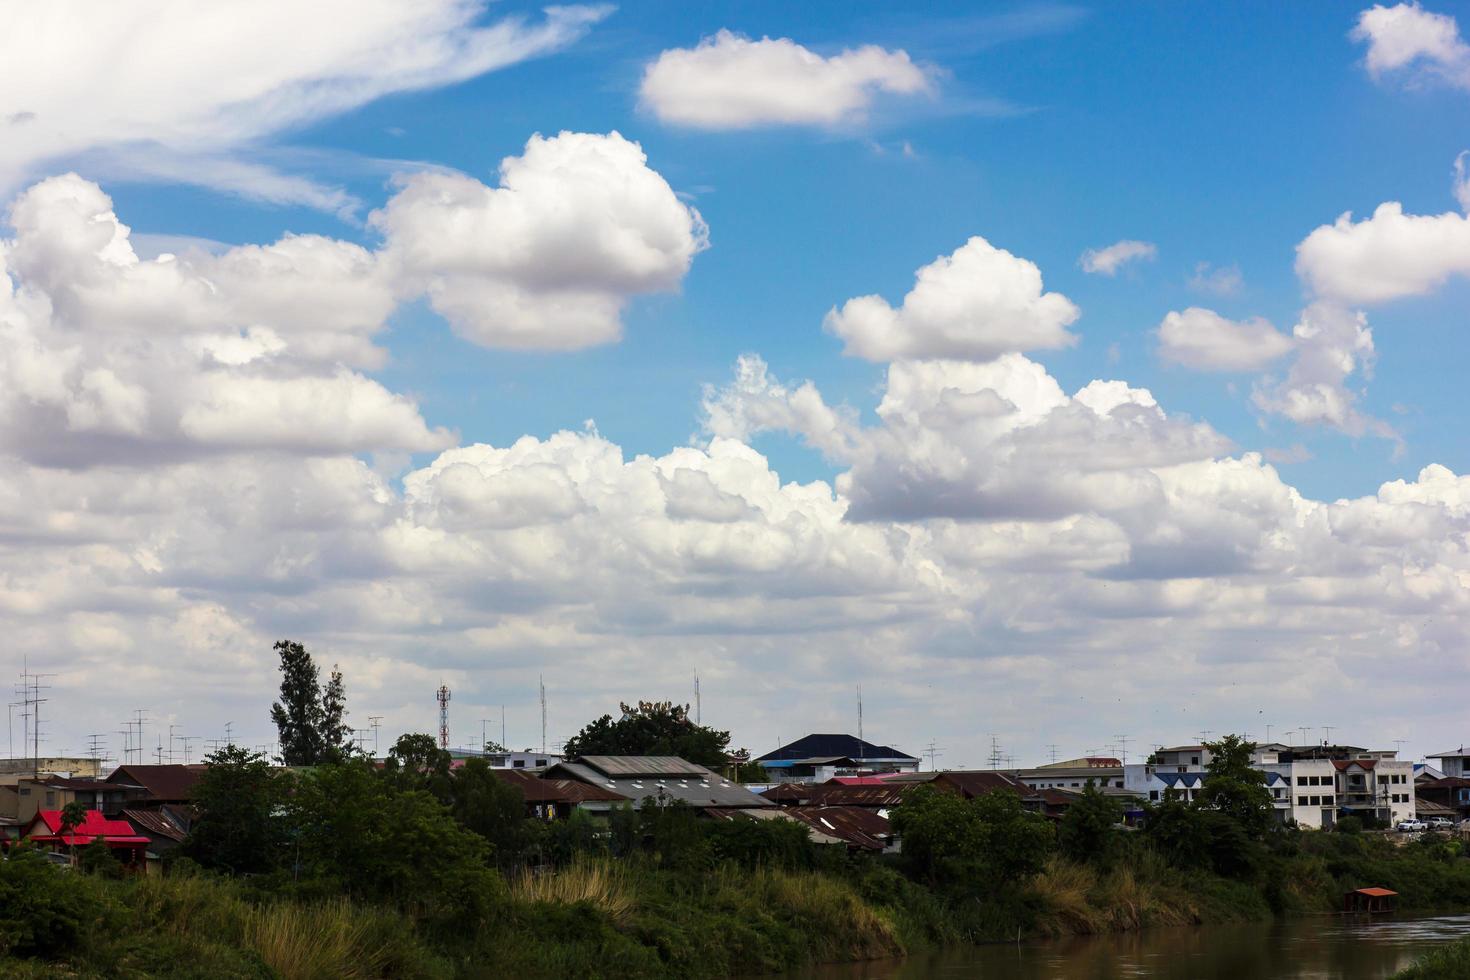 costa residencial com céu nublado. foto